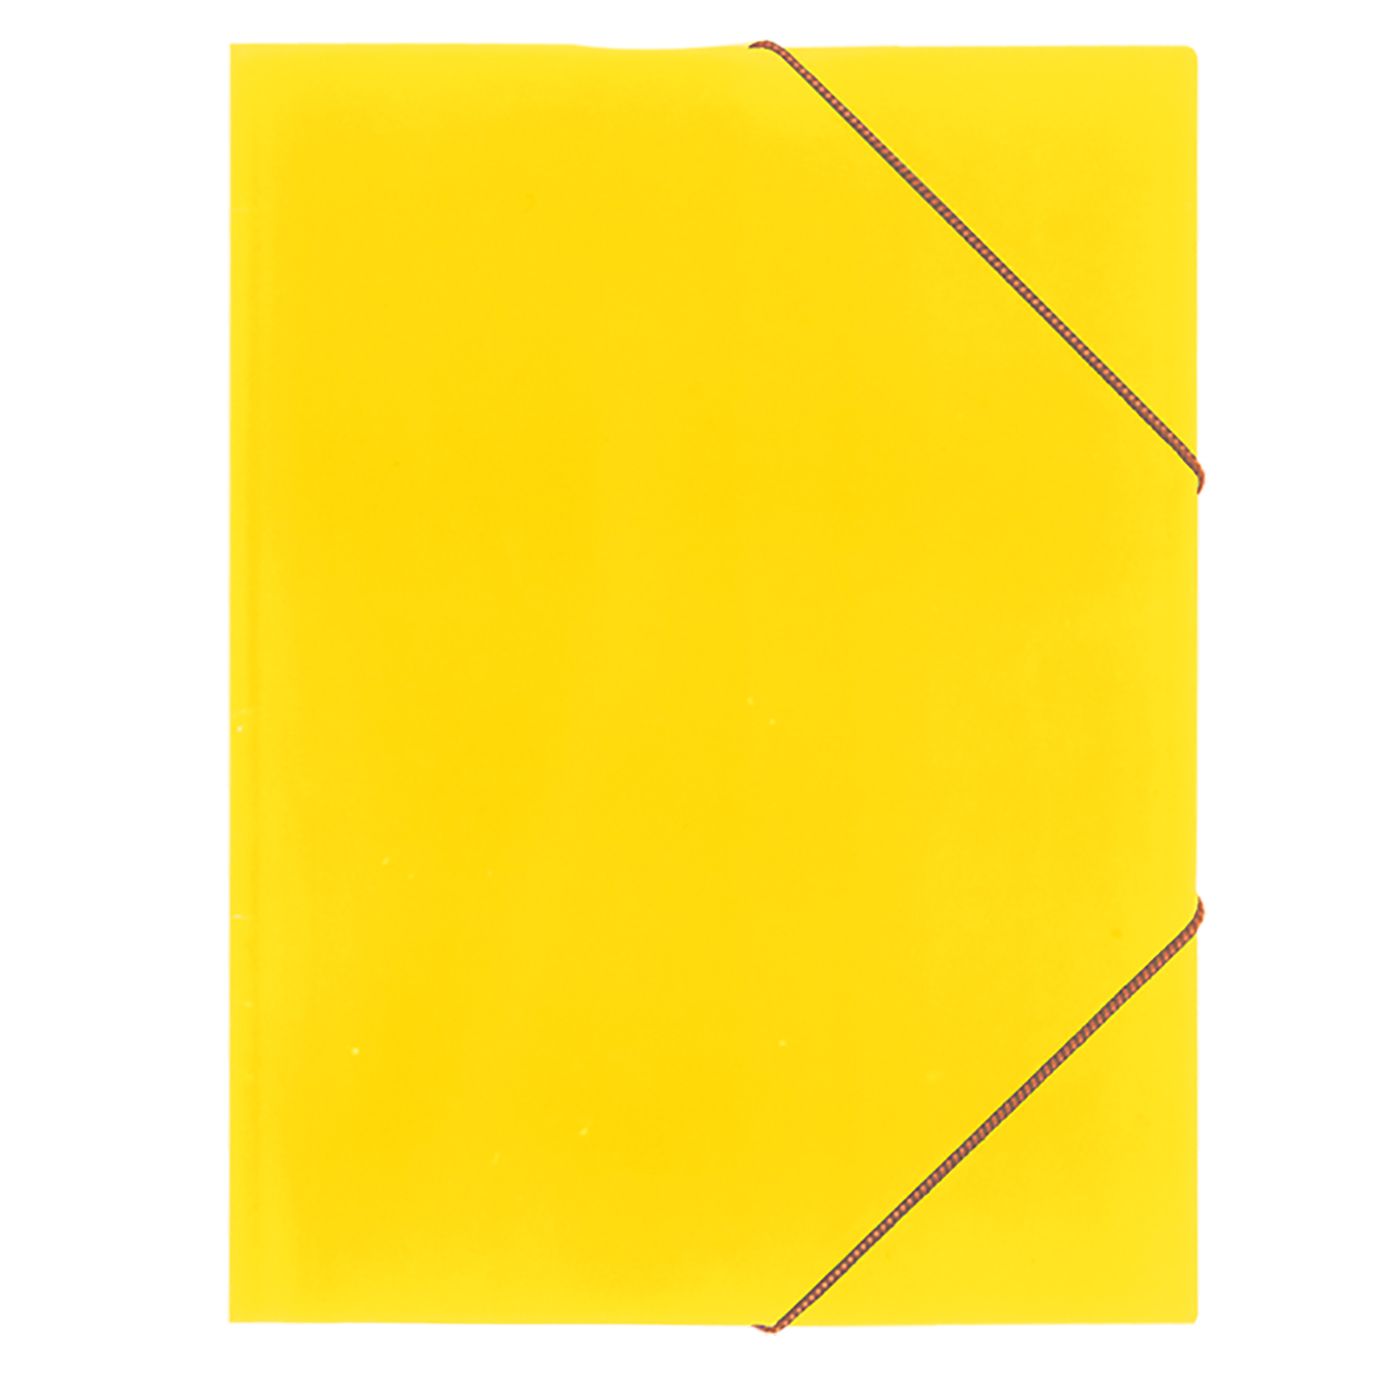 Φάκελος Χάρτινος Κίτρινος 25x35εκ. Justnote 18-48-yellow (Σετ 12 Τεμάχια) (Υλικό: Χαρτί, Χρώμα: Κίτρινο ) - Justnote - 18-48-yellow 163473